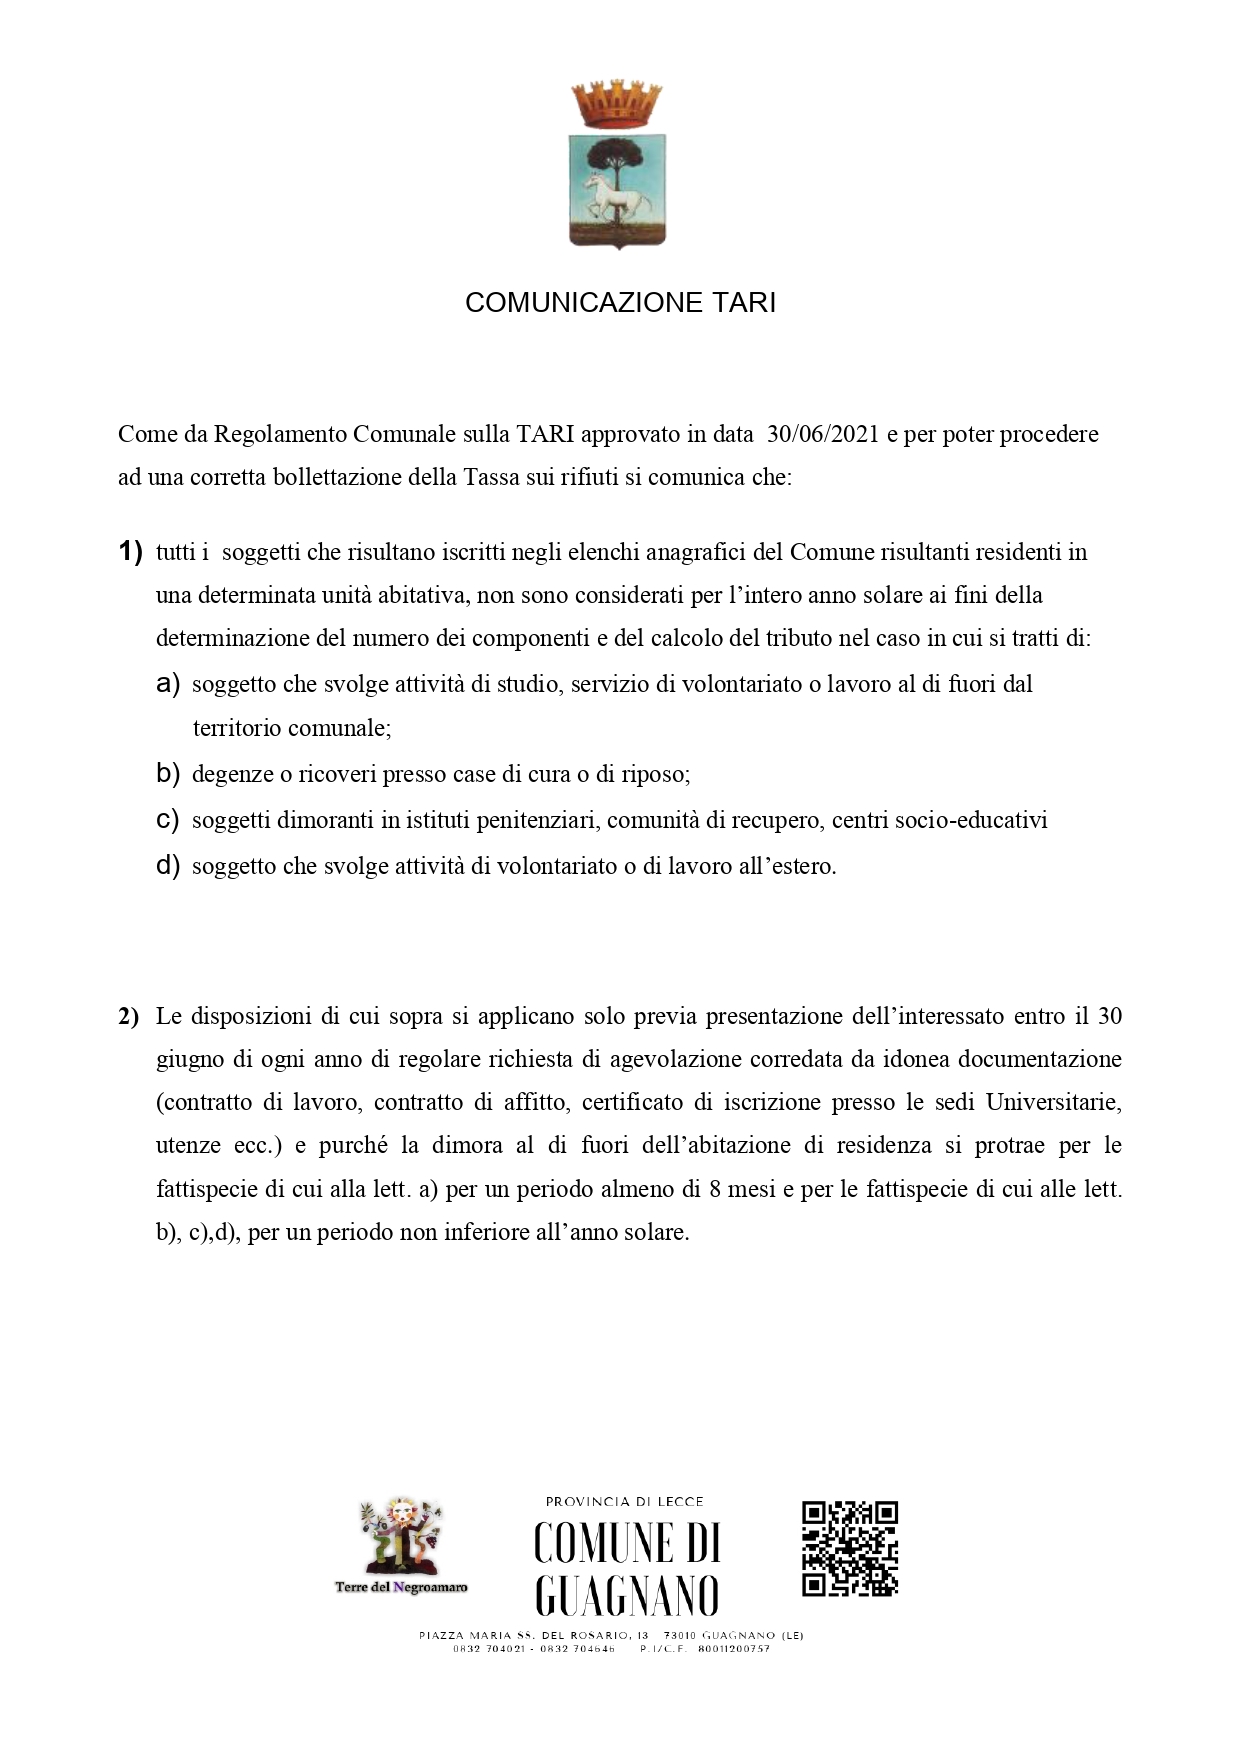 COMUNICAZIONE TARI page 0001